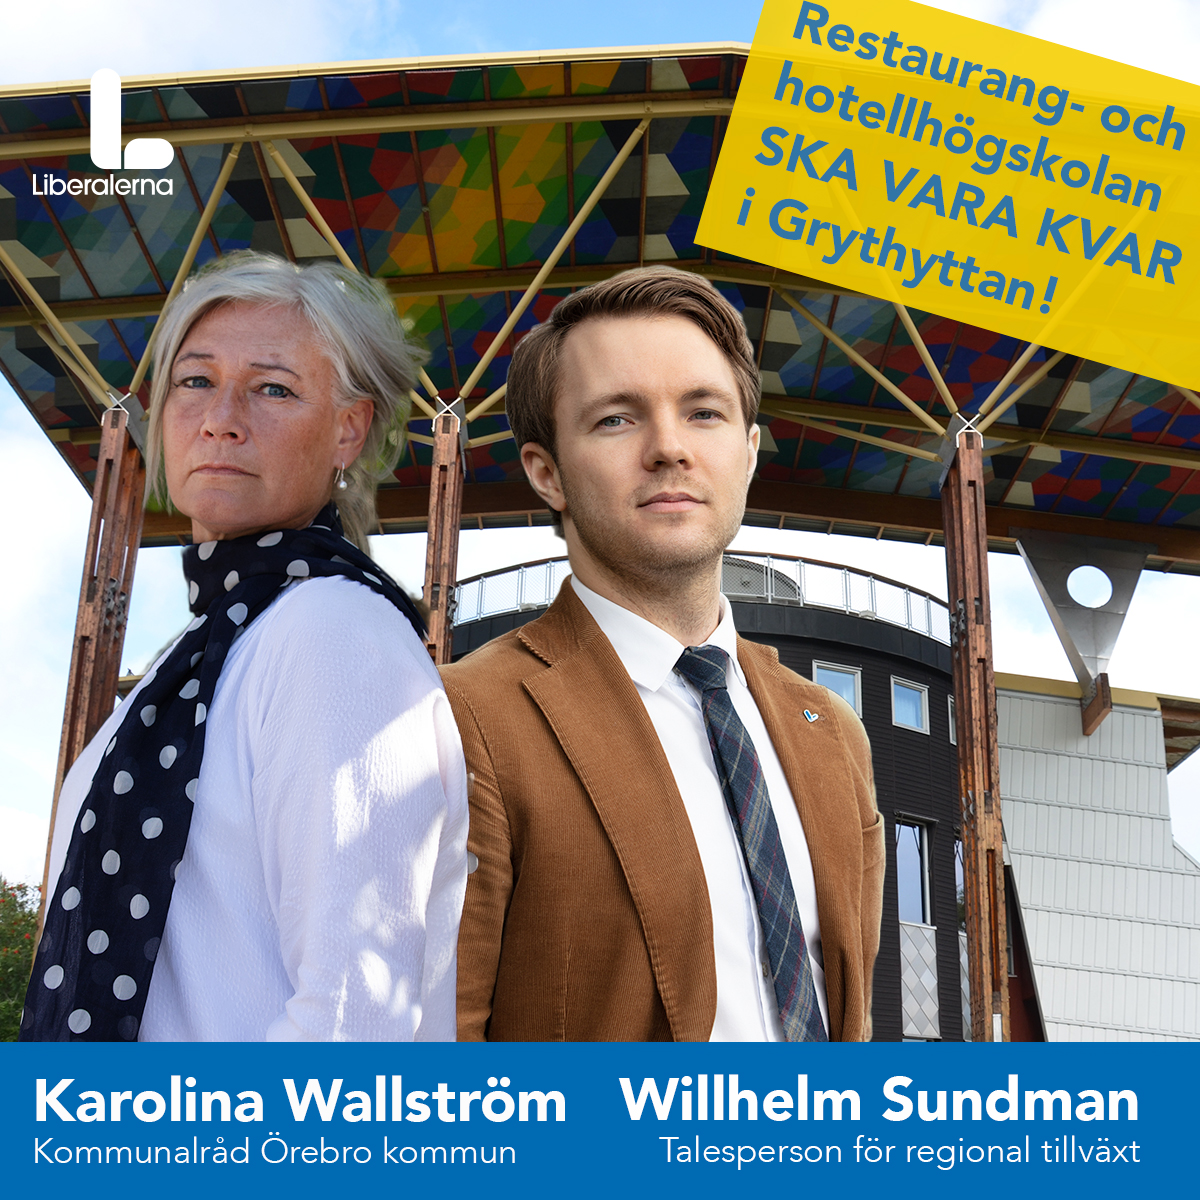 Karolina Wallström (L) Kommunalråd och Willhelm Sundman